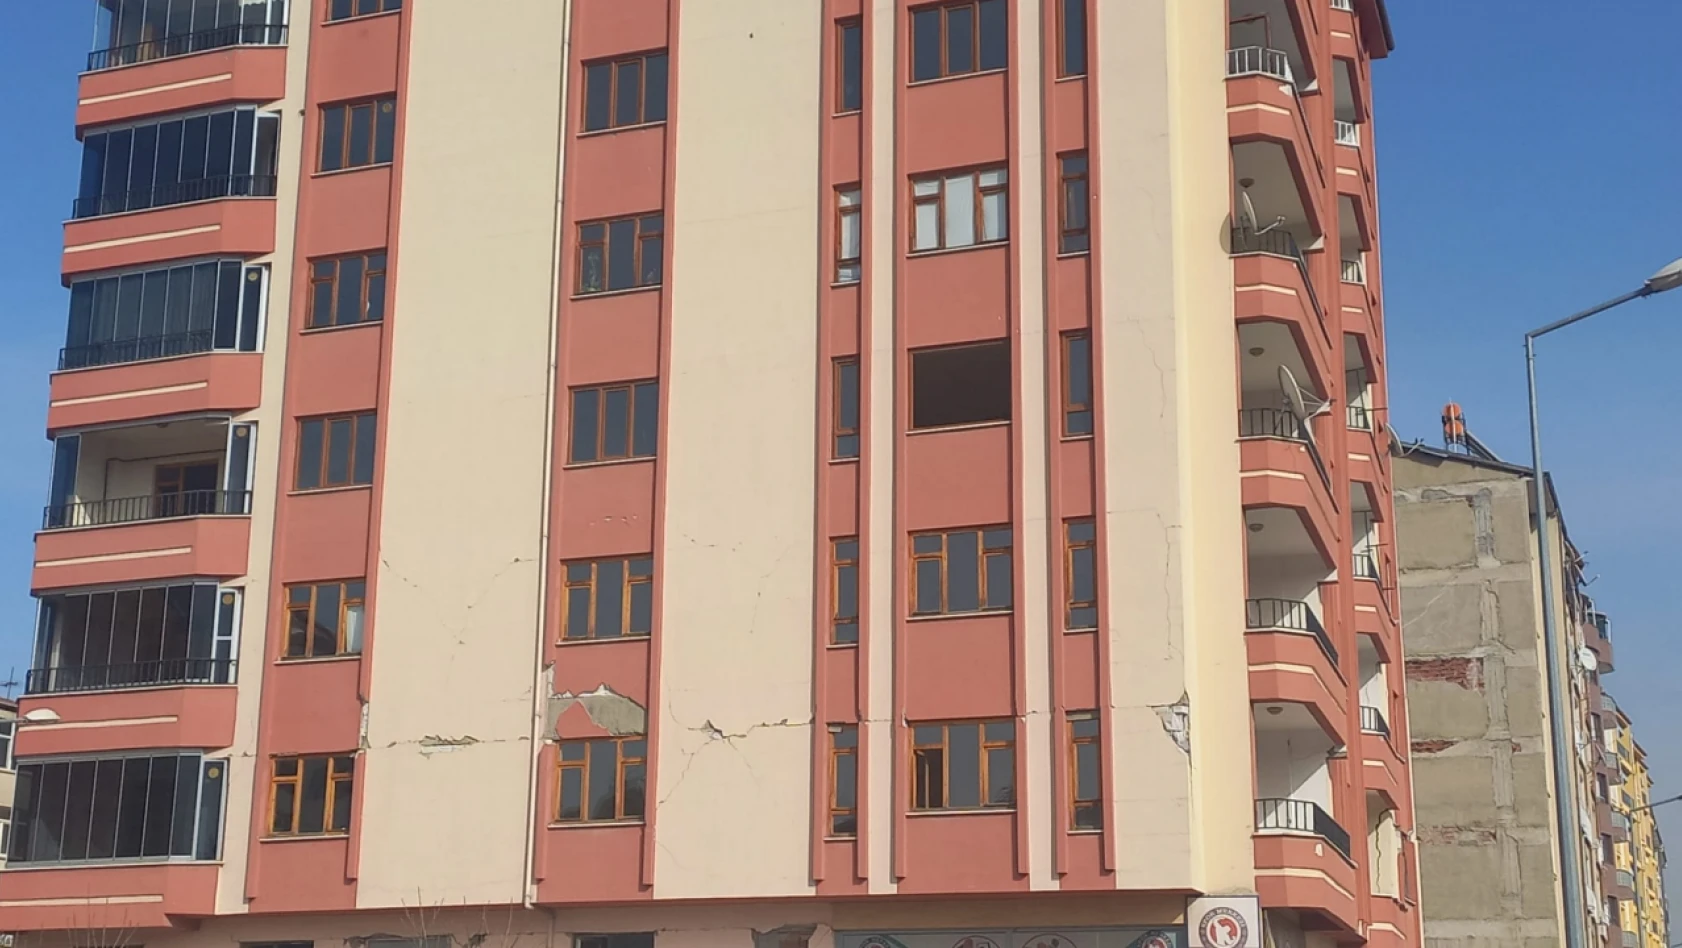 Limak Ortaokulu Ögrencileri Tedirgin Ağır Hasarlı Binaların Yıkılmasını İstiyor